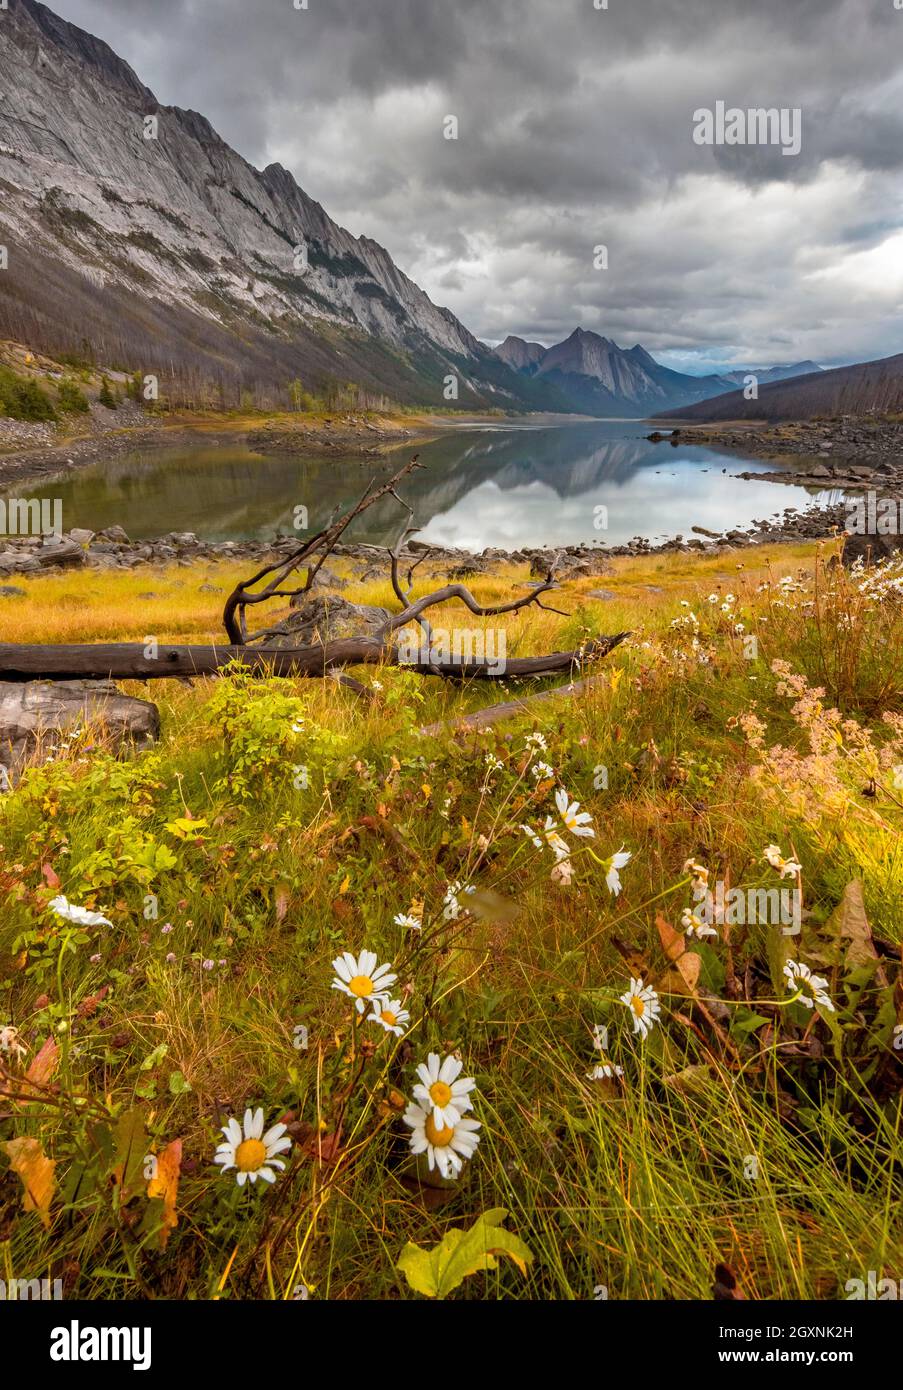 Les montagnes se reflètent dans un lac, Medicine Lake, prairie jaune automnale sur la rive, vallée de Maligne, parc national Jasper, Alberta, Canada Banque D'Images